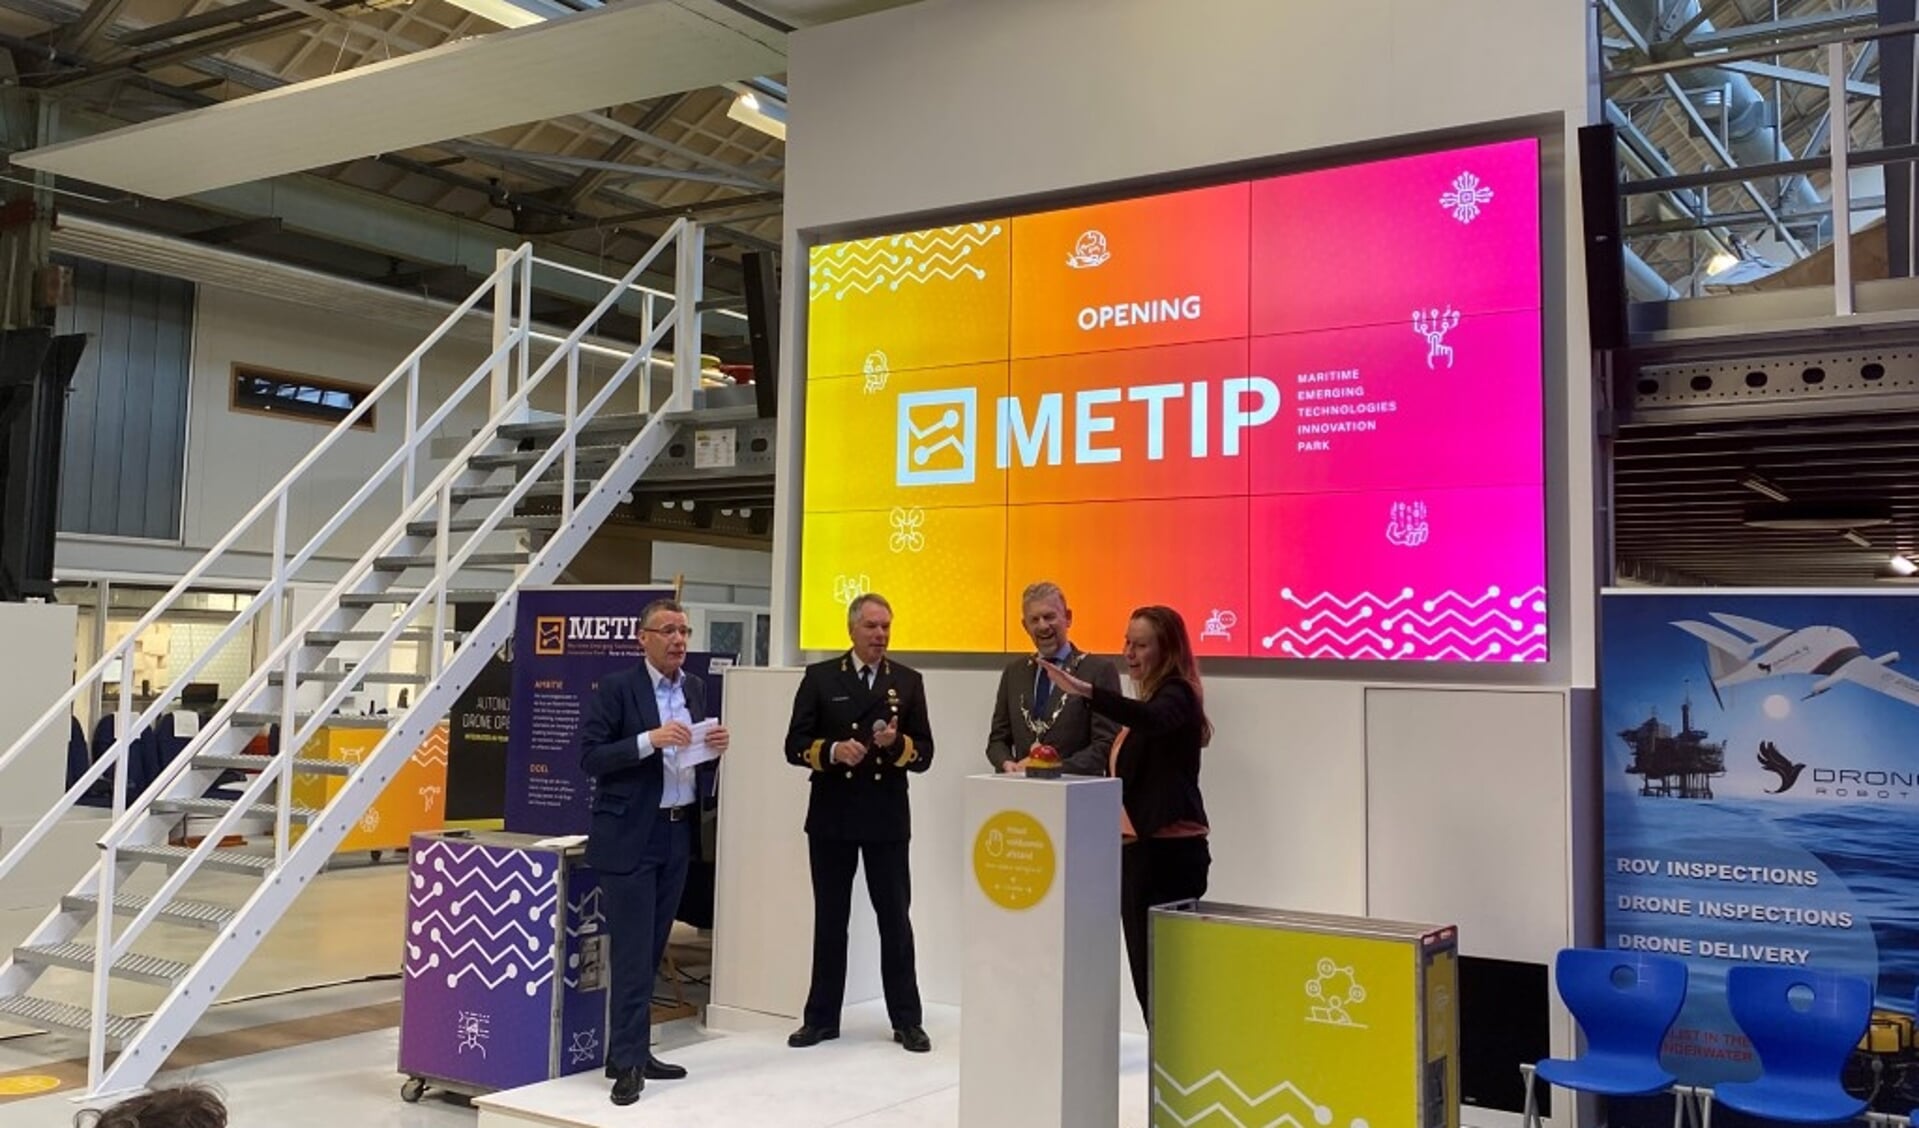 De opening van METIP.